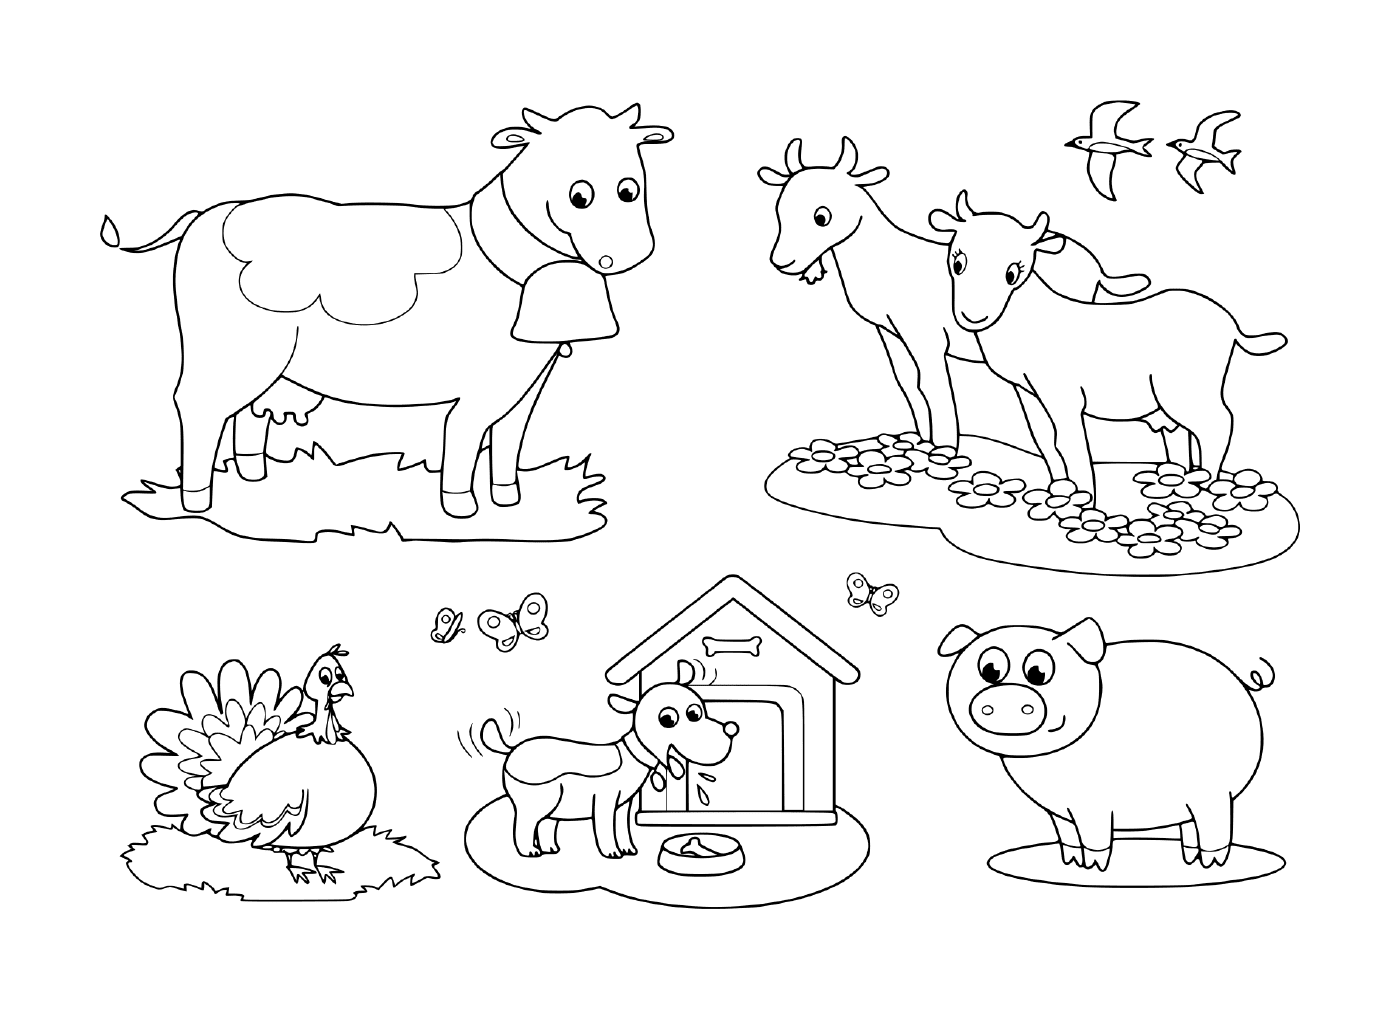   un groupe d'animaux de ferme comprenant une chèvre, une vache, un cochon, une dinde, un chien et une hirondelle 